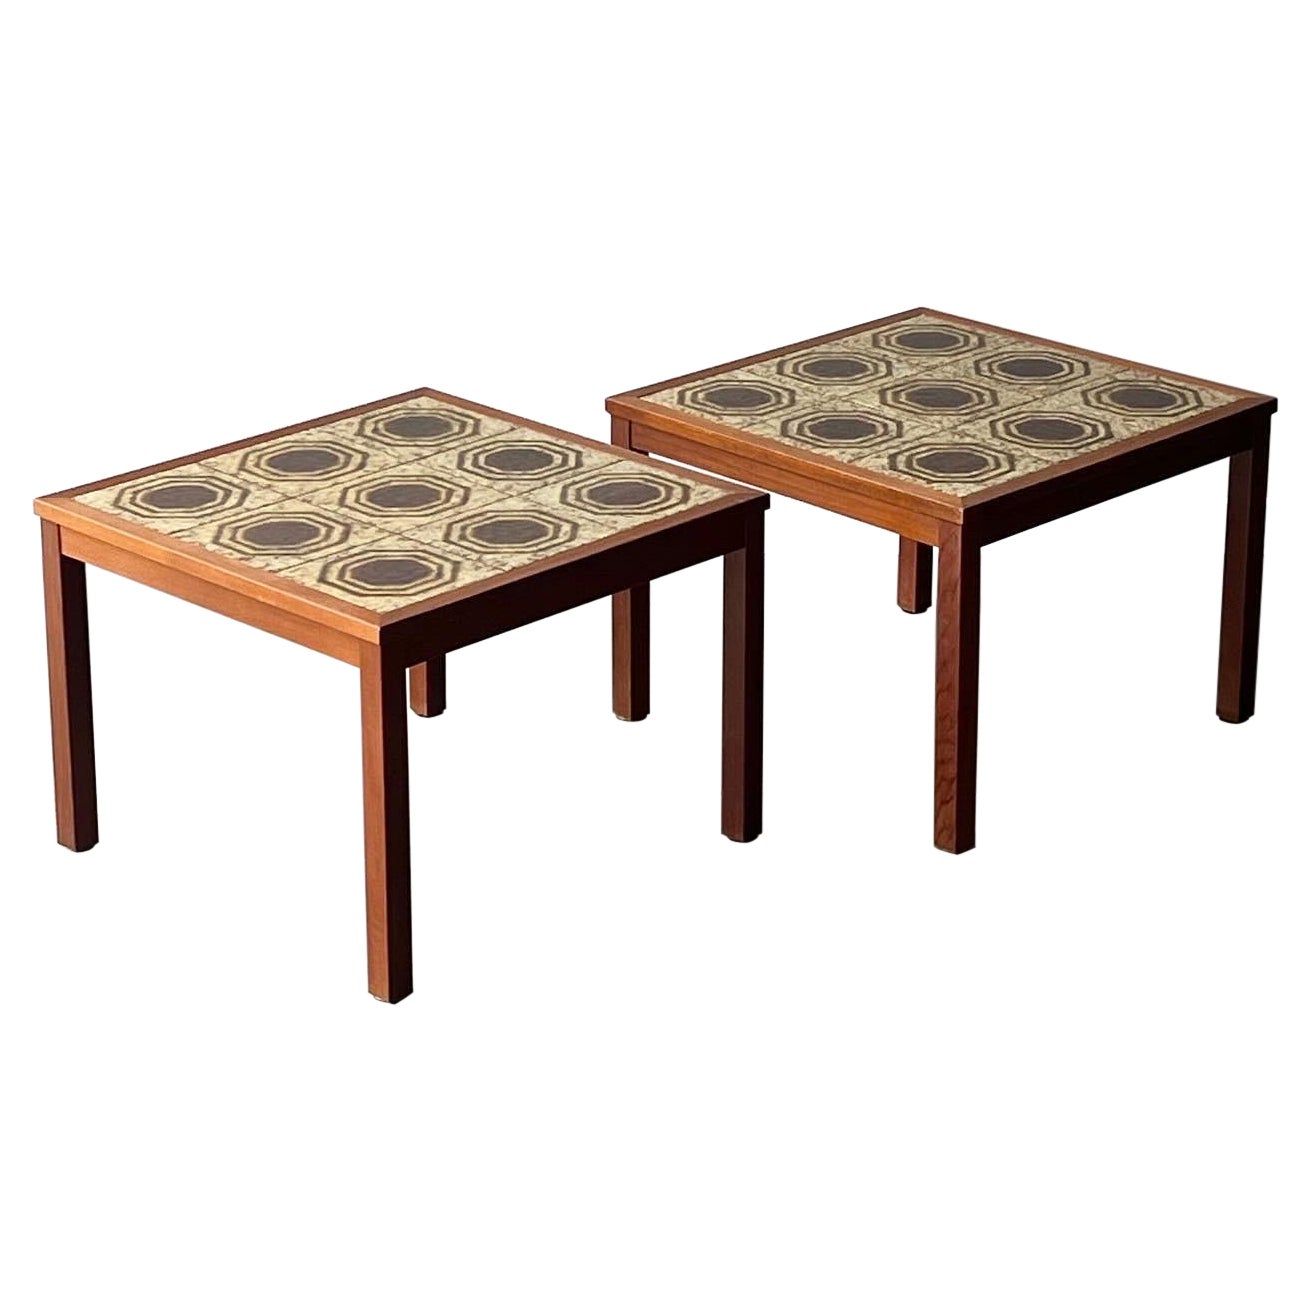 Vintage Danish Tile Top End Tables - a Pair For Sale